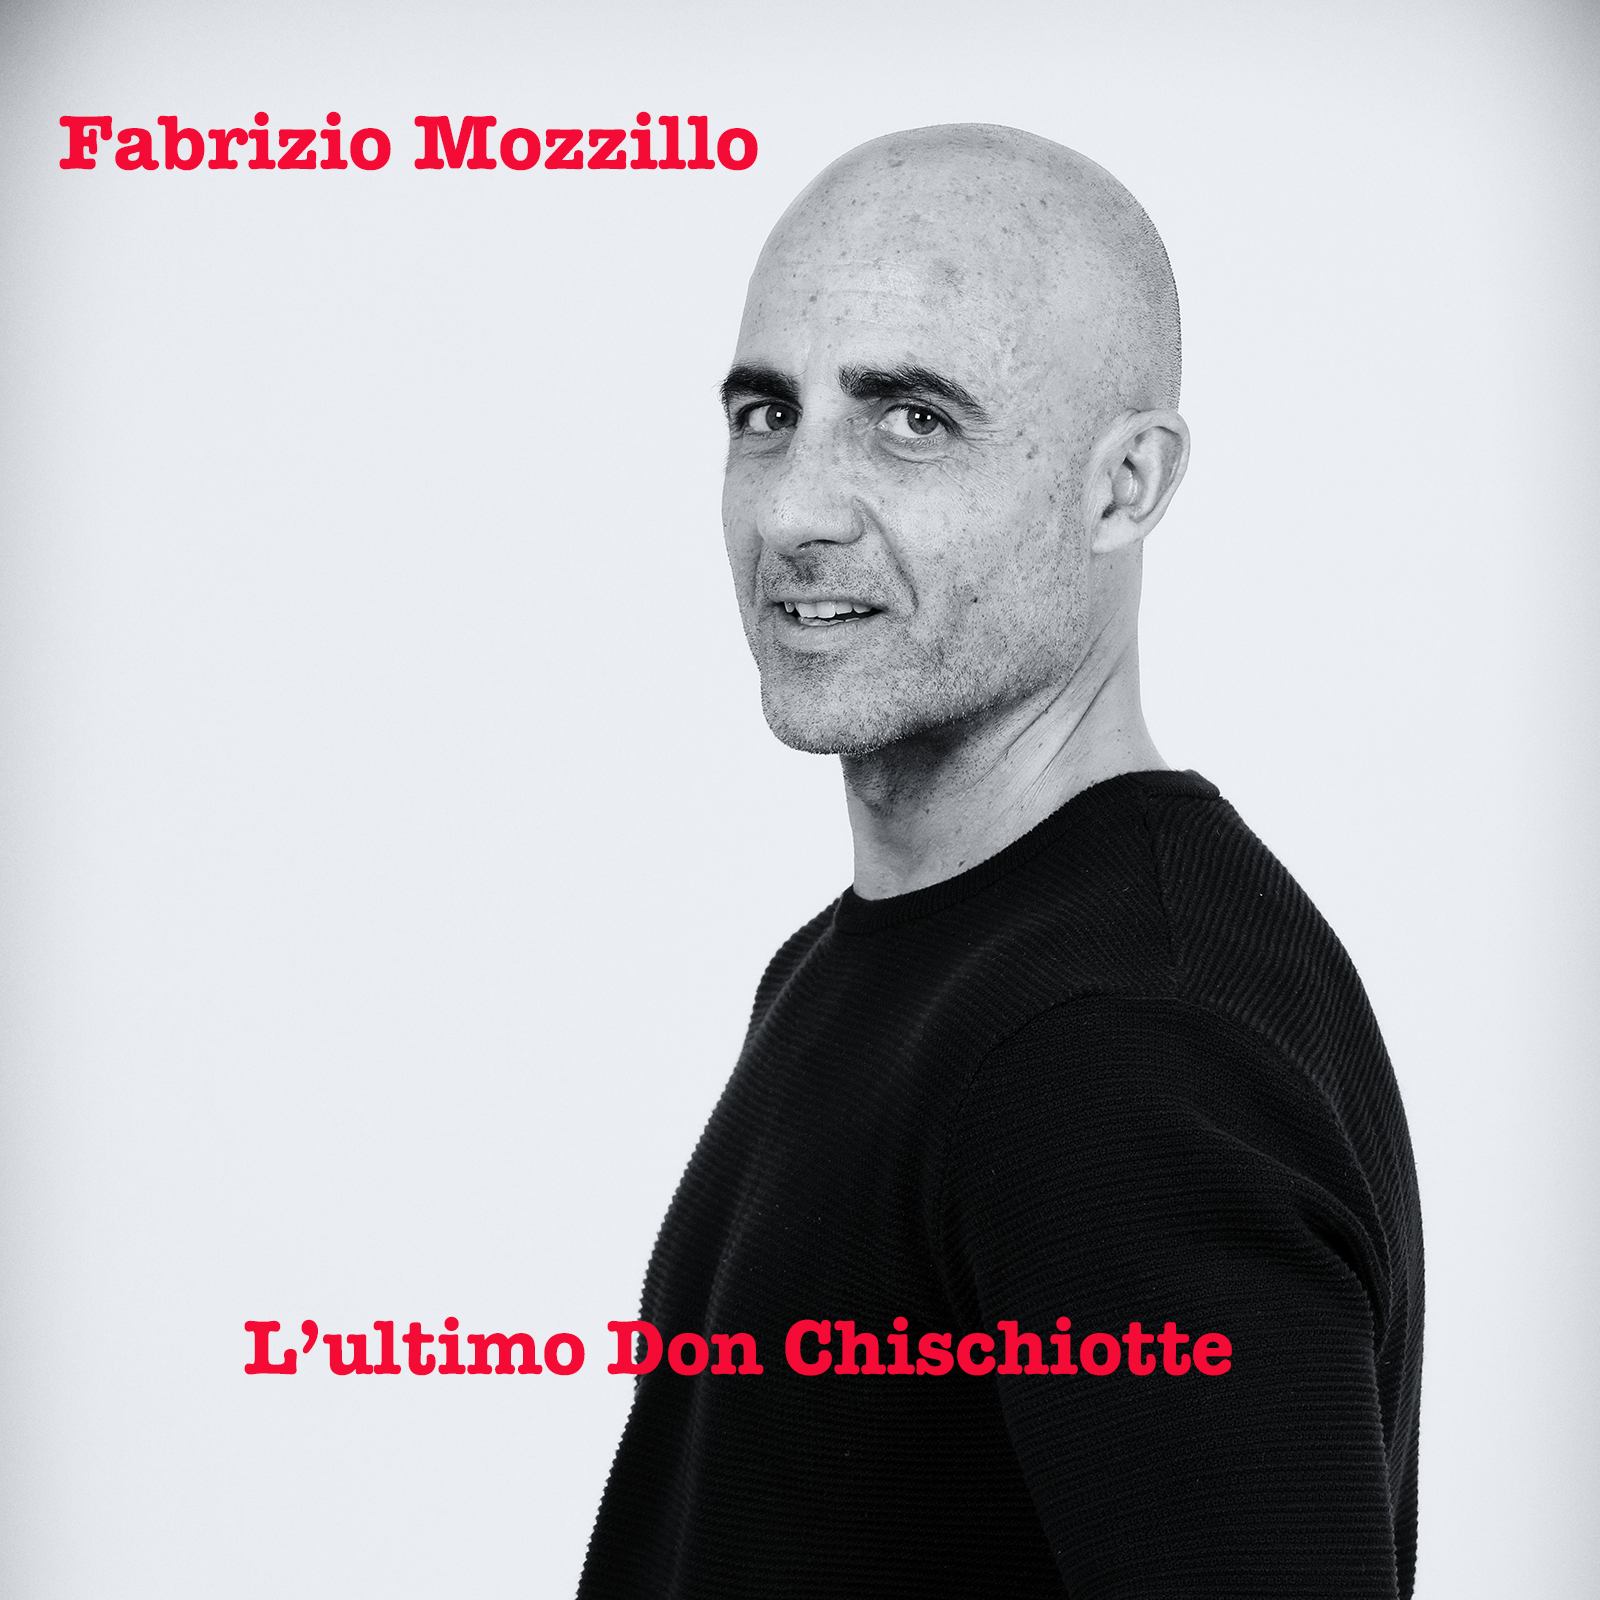 Scopri di più sull'articolo “L’ultimo Don Chisciotte”,il secondo singolo di Fabrizio Mozzillo